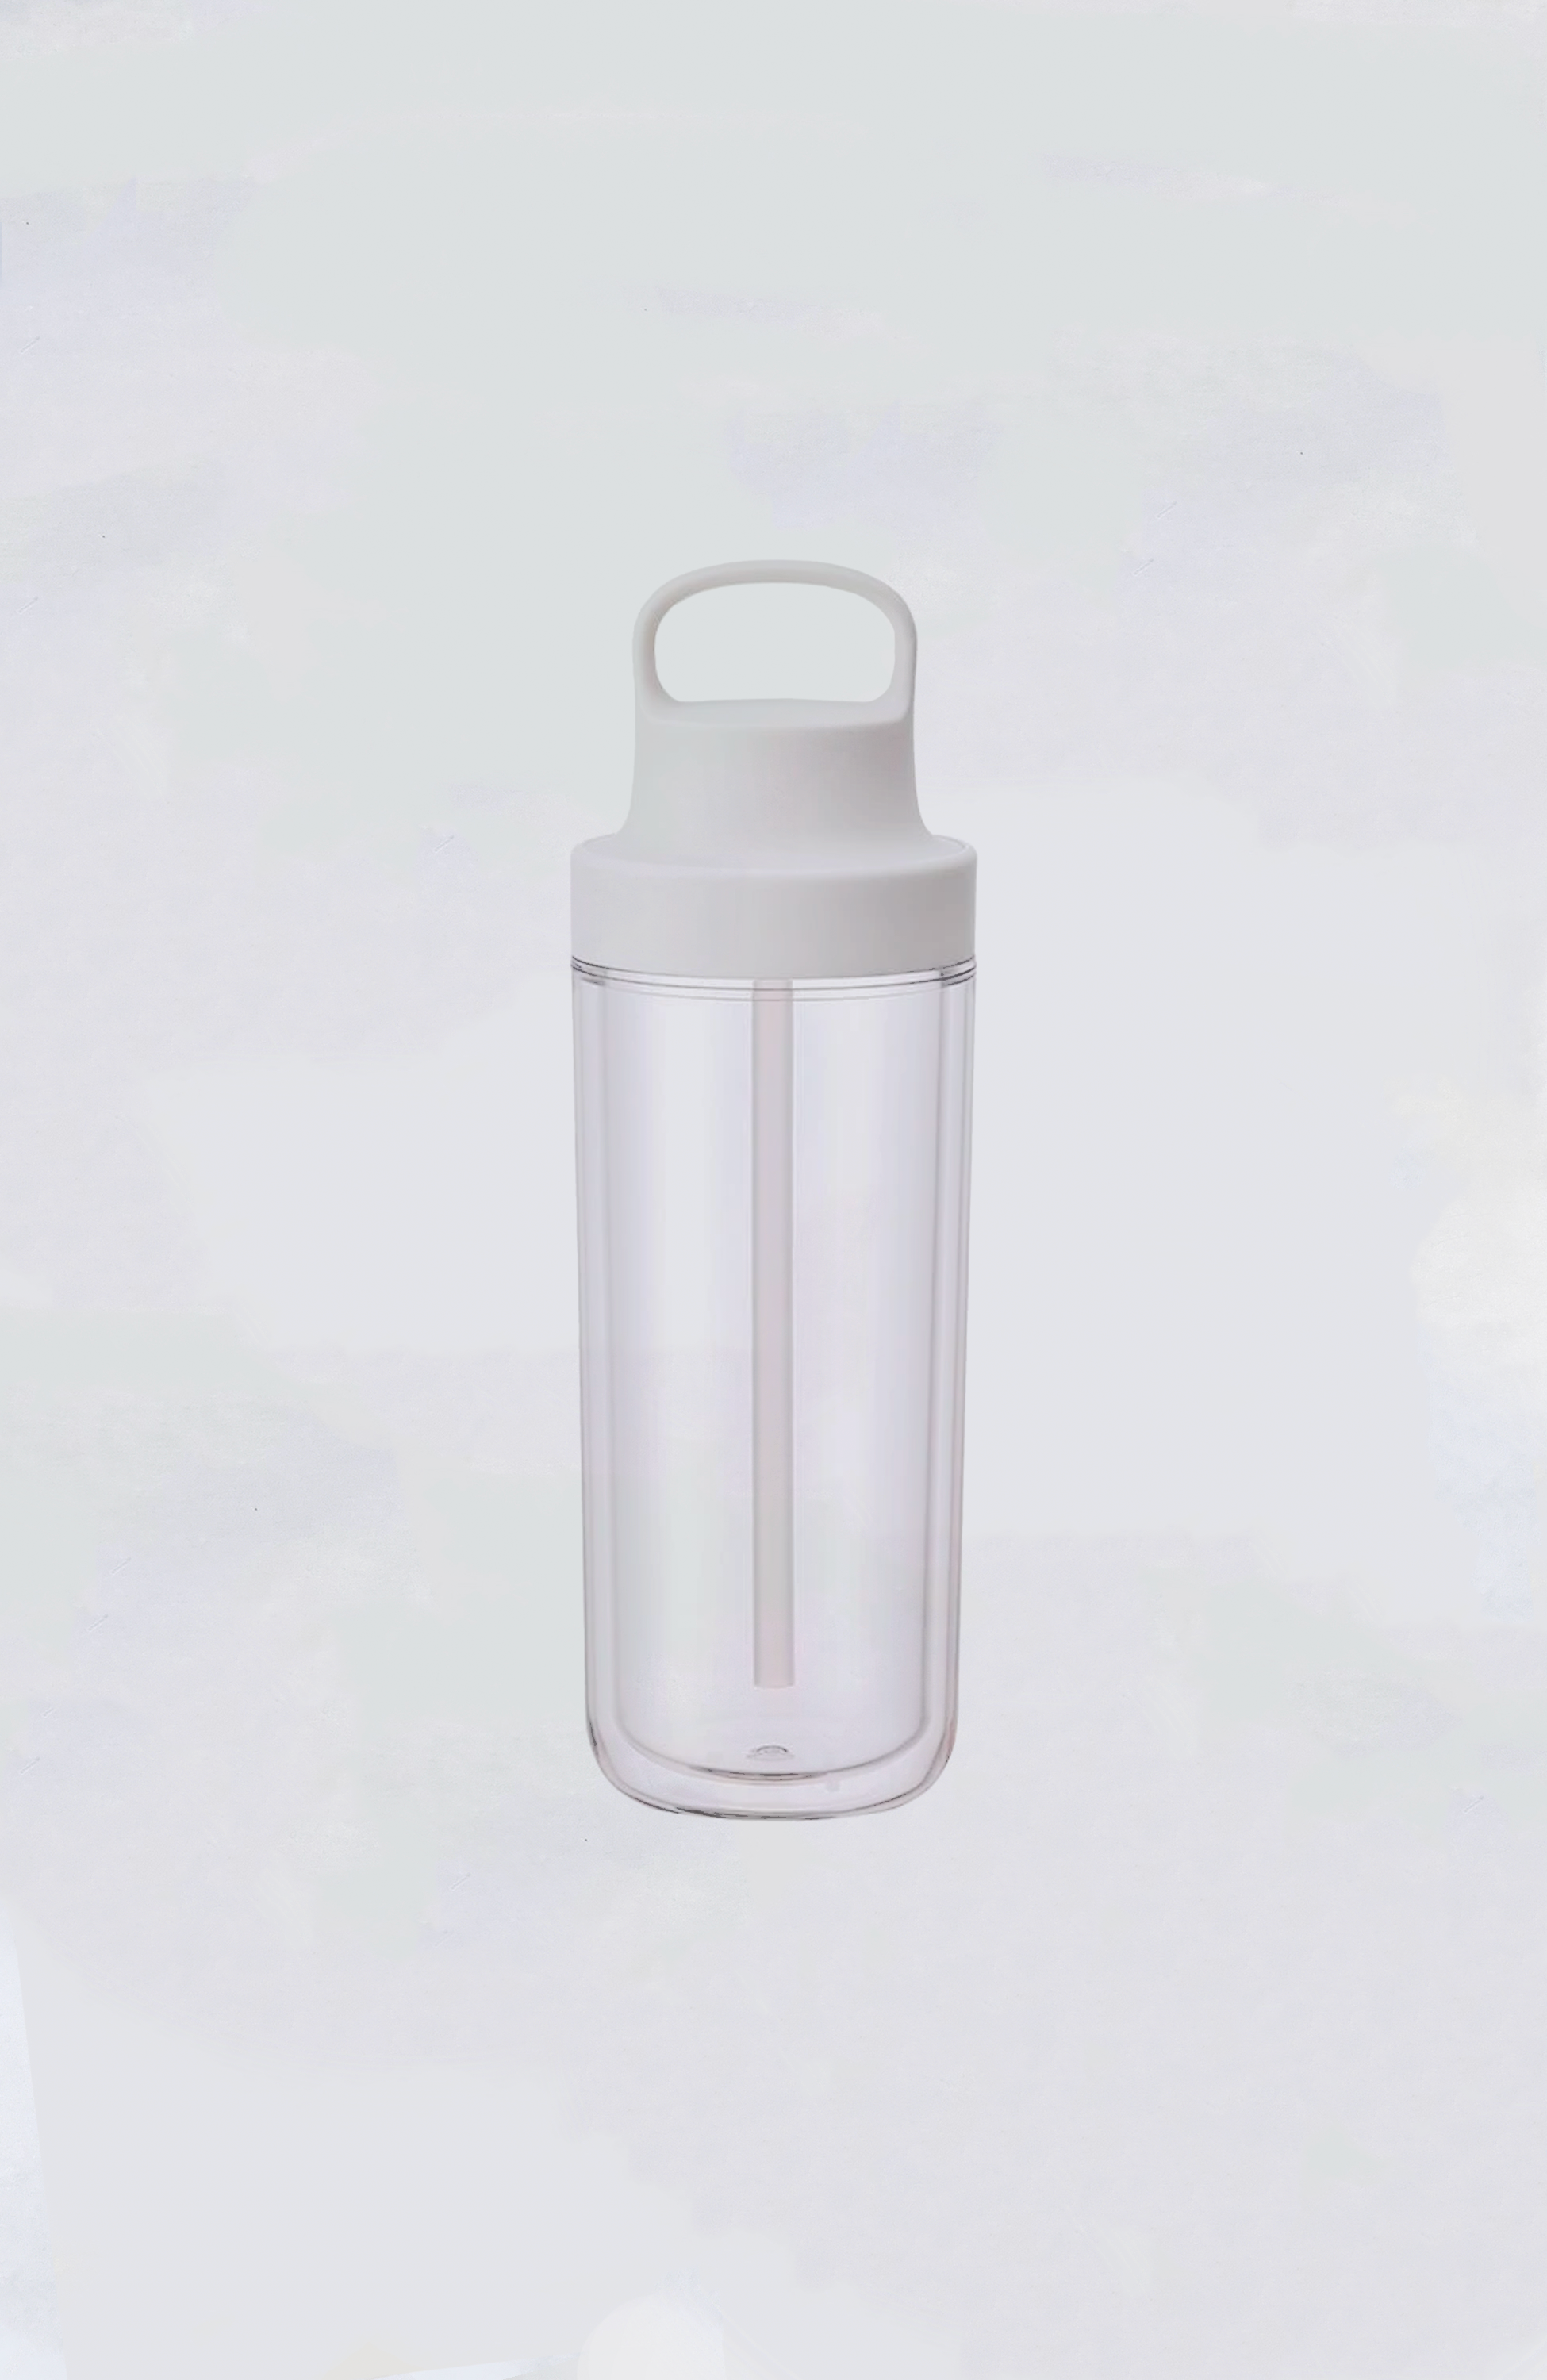 Kinto To-Go Bottle, Yellow, 16.2 fl oz (480 ml)